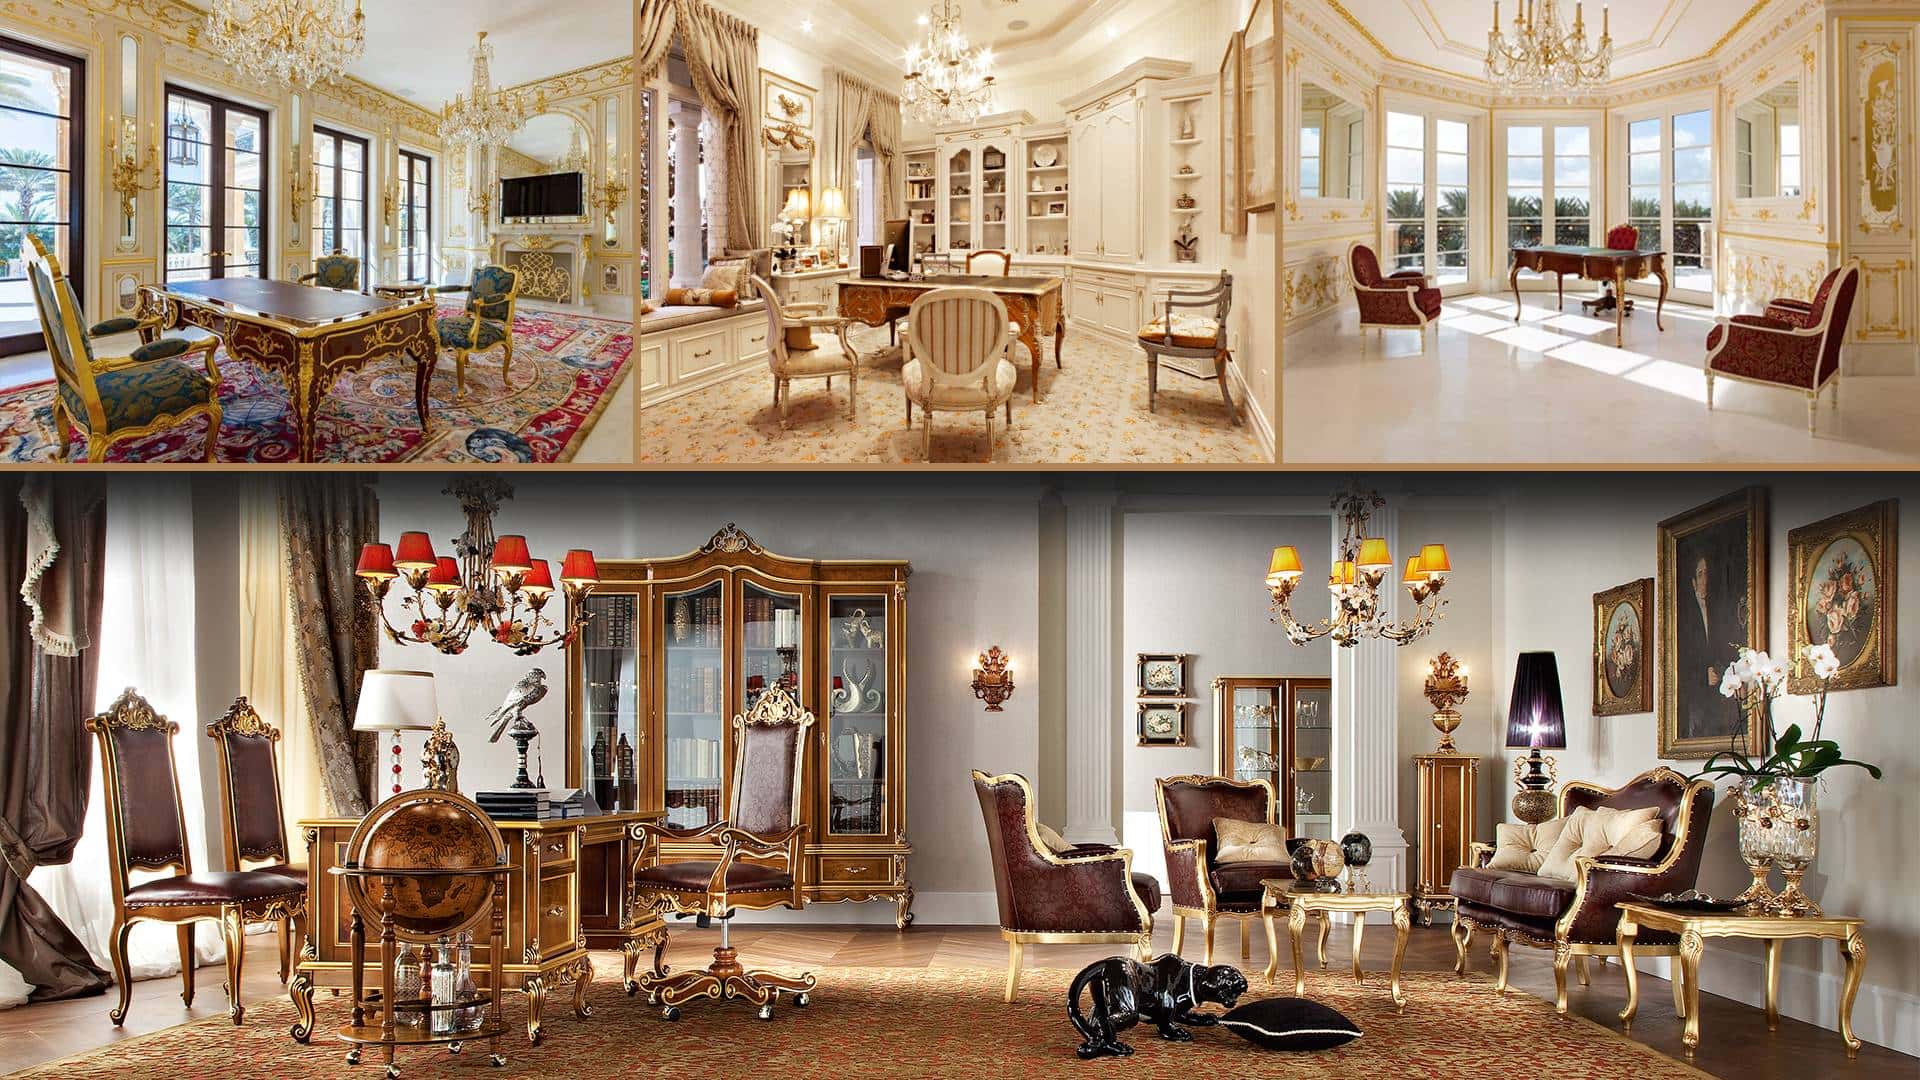 klasický elegantní královský speciální exkluzivní viktoriánský soukromý kancelářský projekt interiérový design projekt nejvyšší výběr luxusní vysoce kvalitní italský ručně vyráběný nábyte